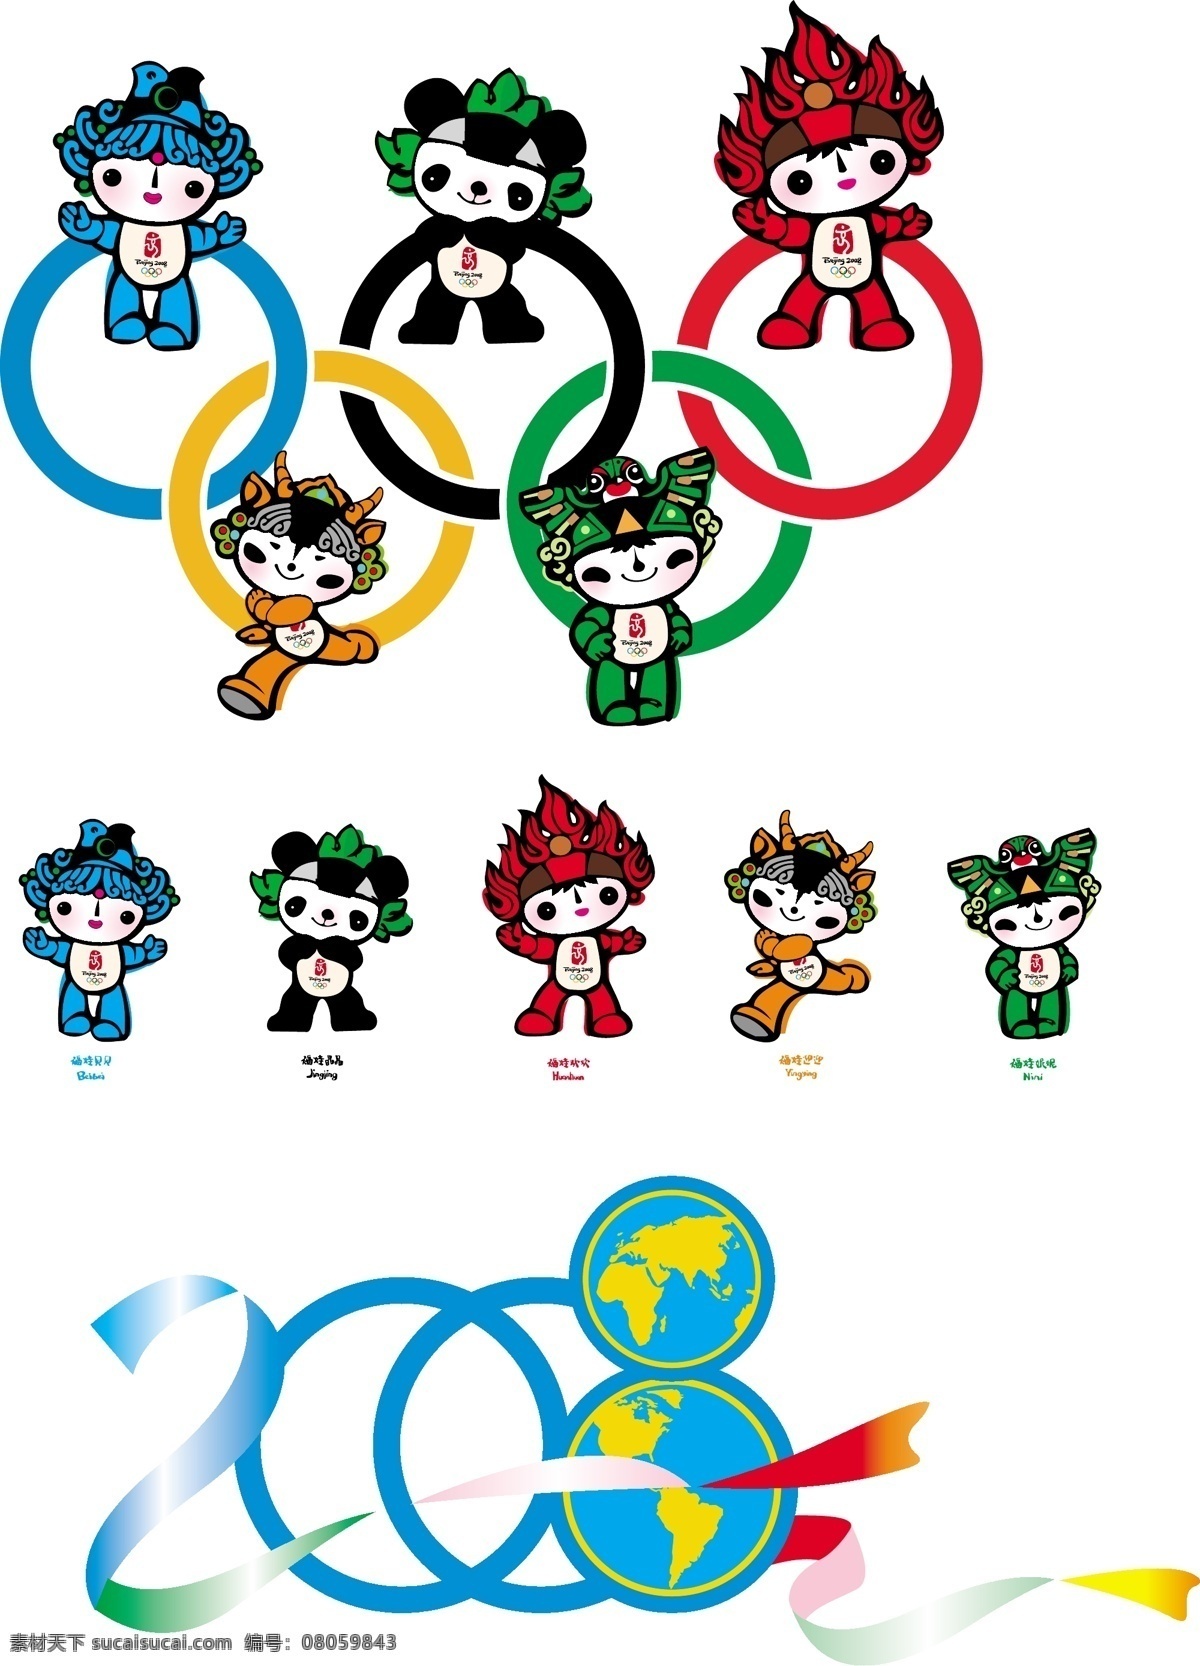 2008 奥运 吉祥物 福娃 矢量 卡通 奥运会 可爱的福娃 奥运吉祥物 矢量图 矢量人物